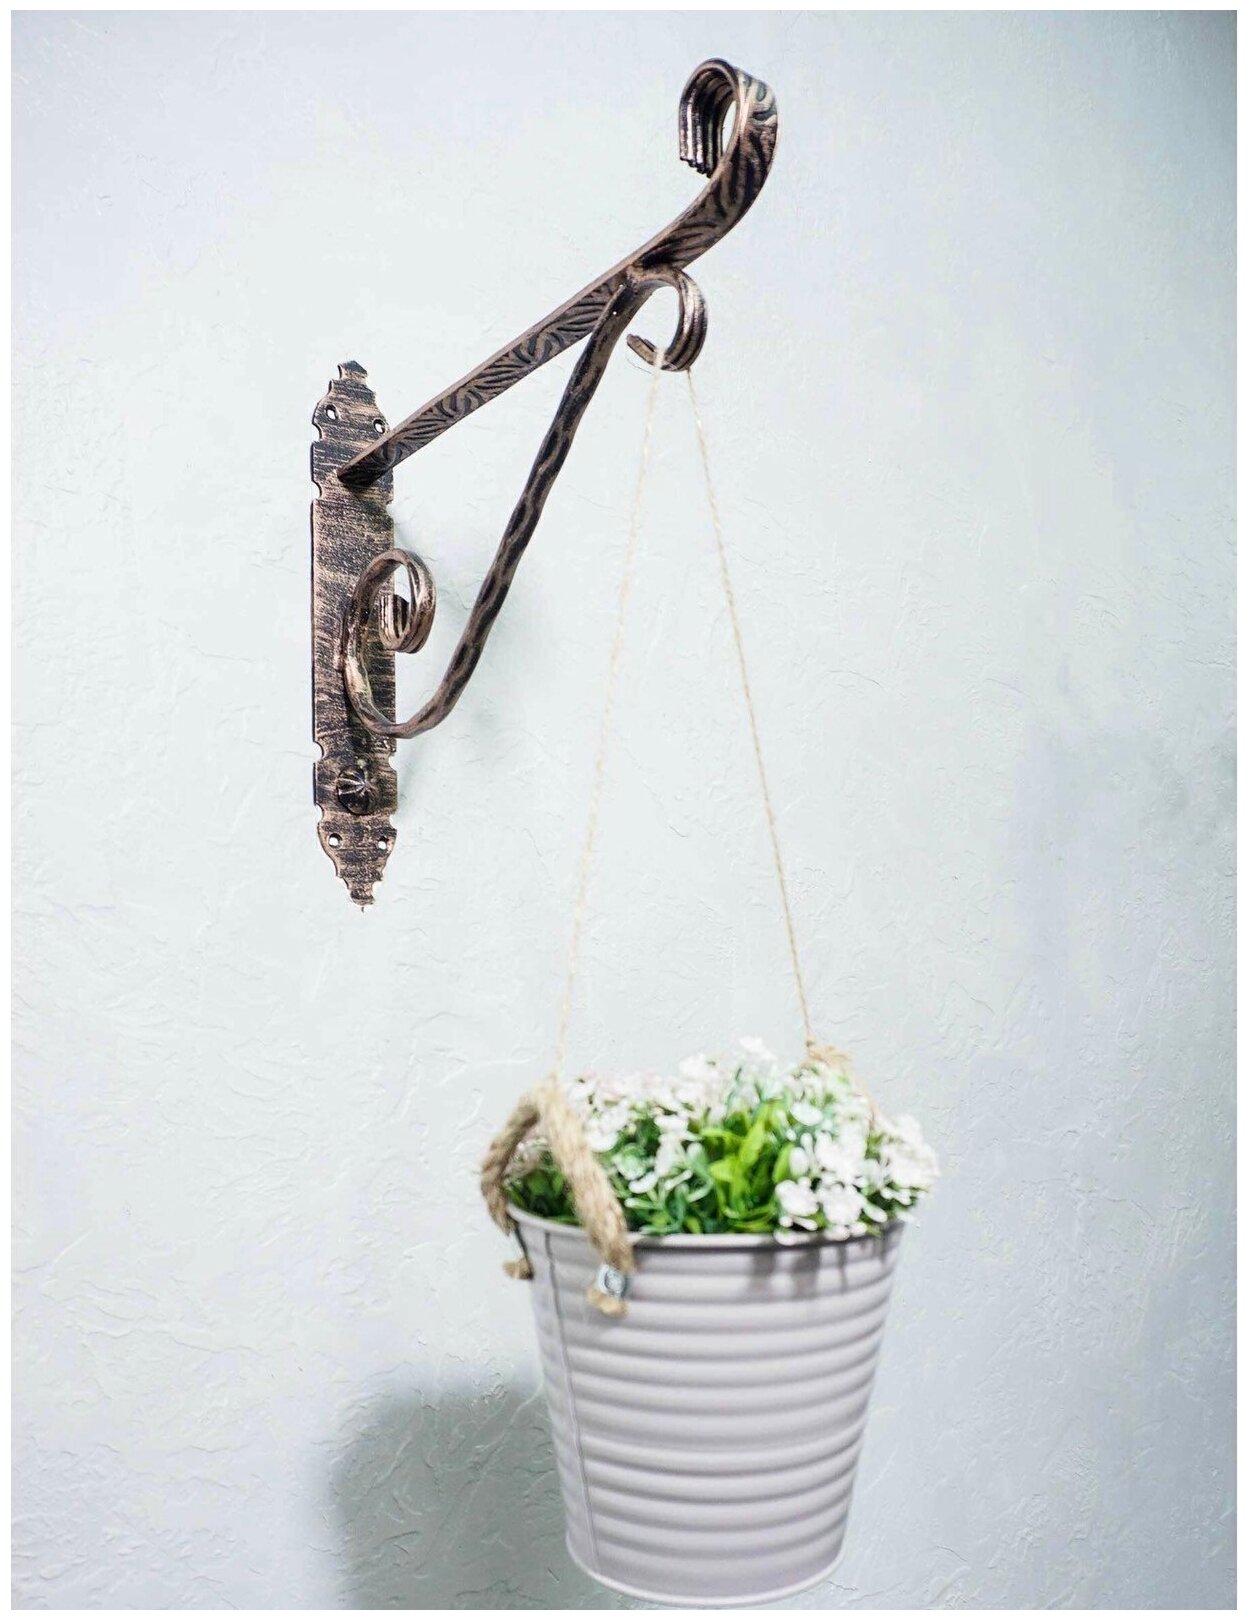 Кронштейн "Малый" 25 см./ крепление держатель к стене/ аксессуар для кашпо/для цветов и растений/полкодержатель